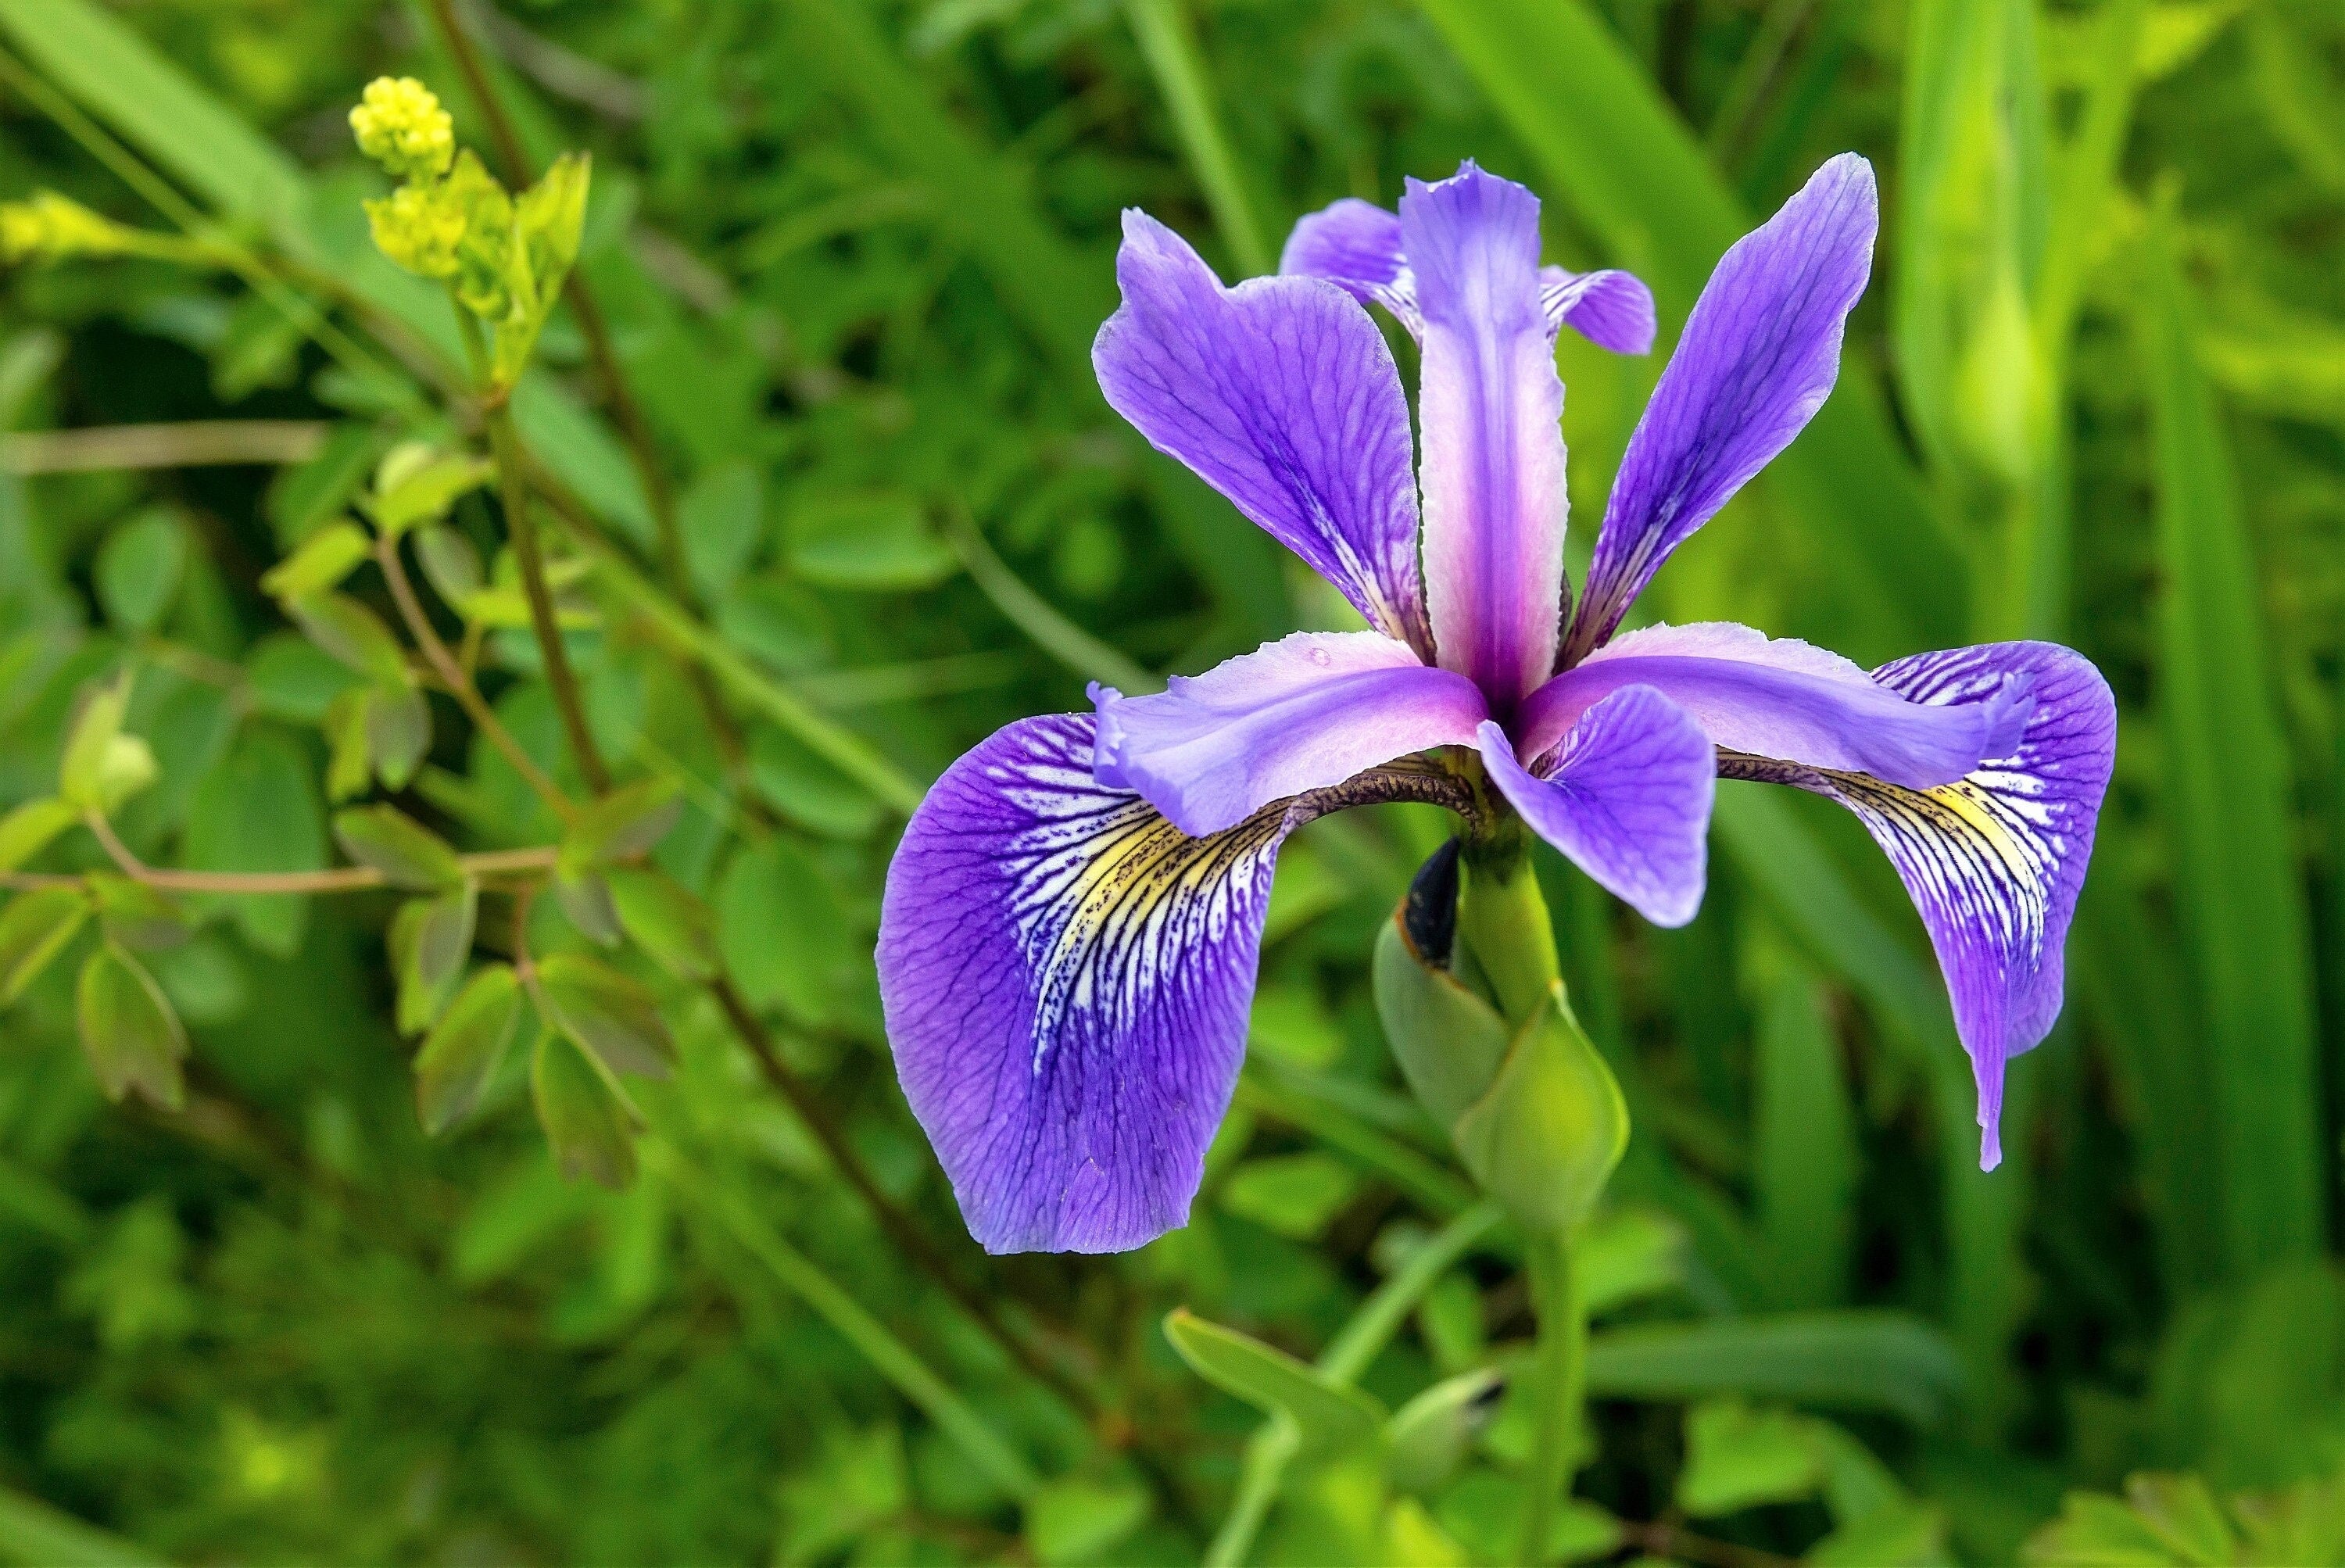 Iris versicolor #1 (Blue Flag Iris) - Scioto Gardens Nursery